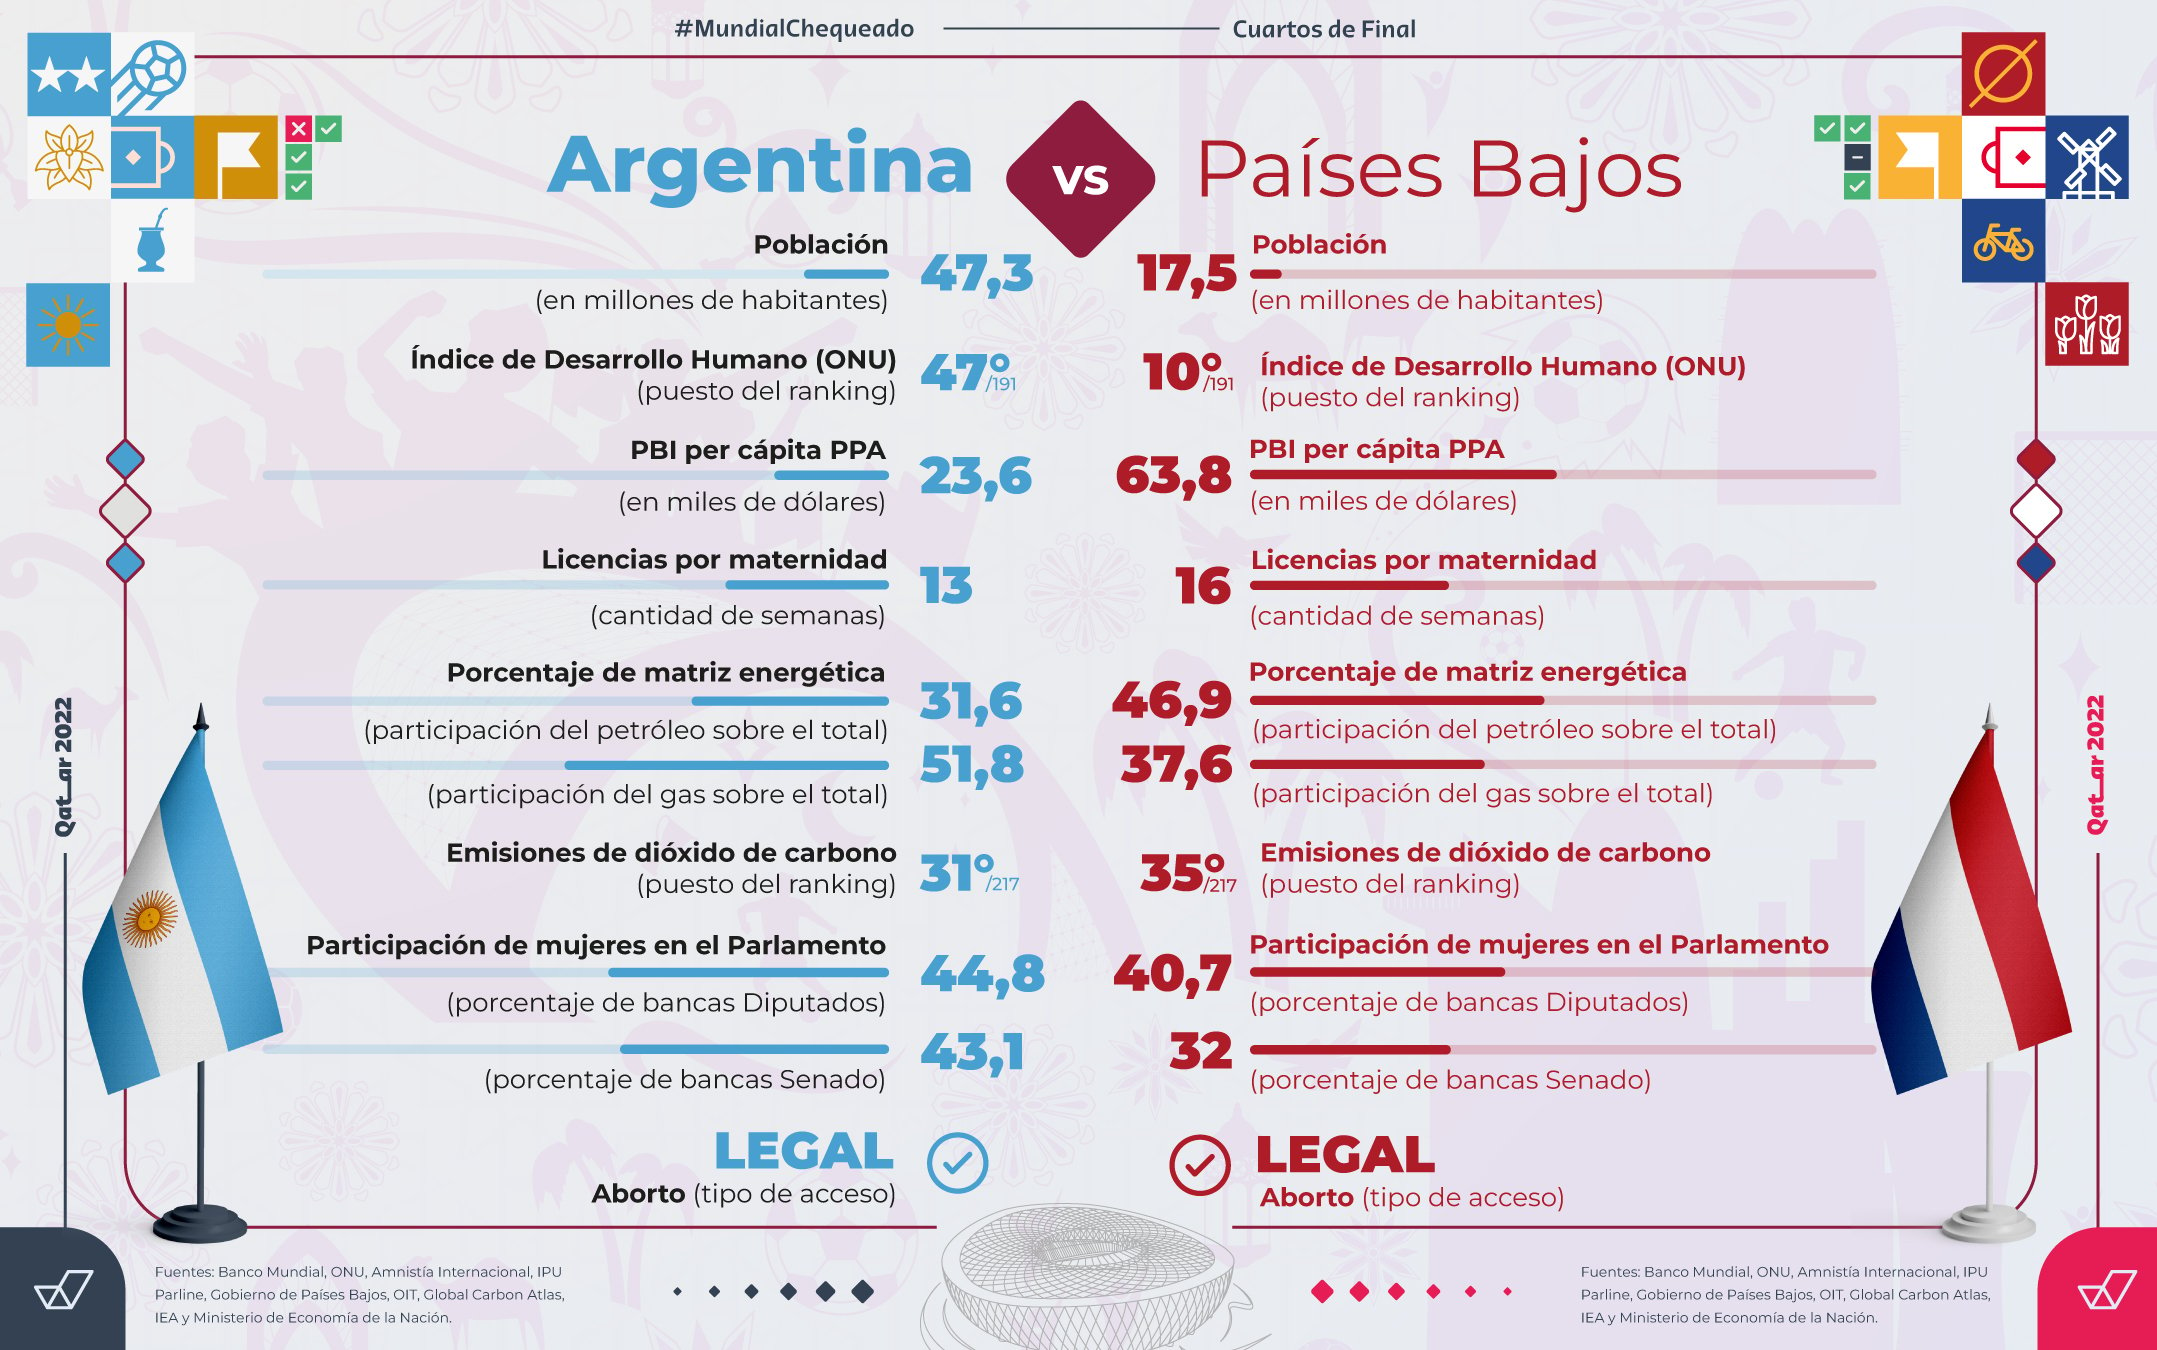 Argentina vs. Países Bajos: ¿cómo les va a ambos países en economía, género y ambiente?